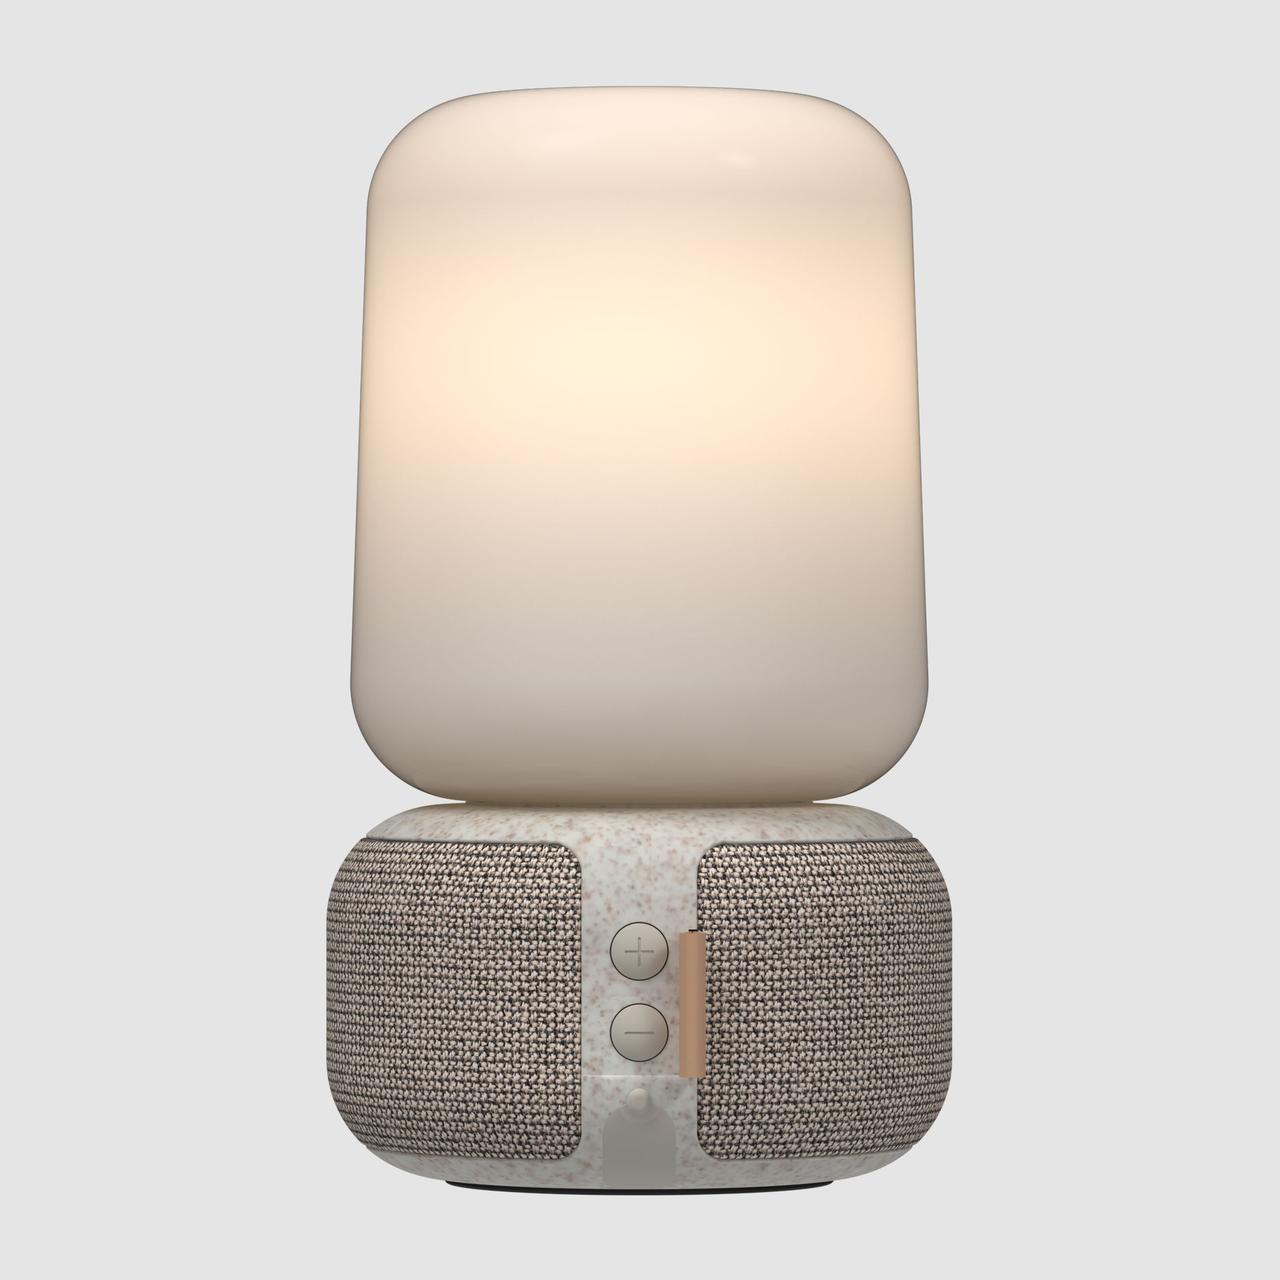 edles Design mit hervorragendem Klang und angenehmer Beleuchtung verspricht der aLOOMI Smart Speaker